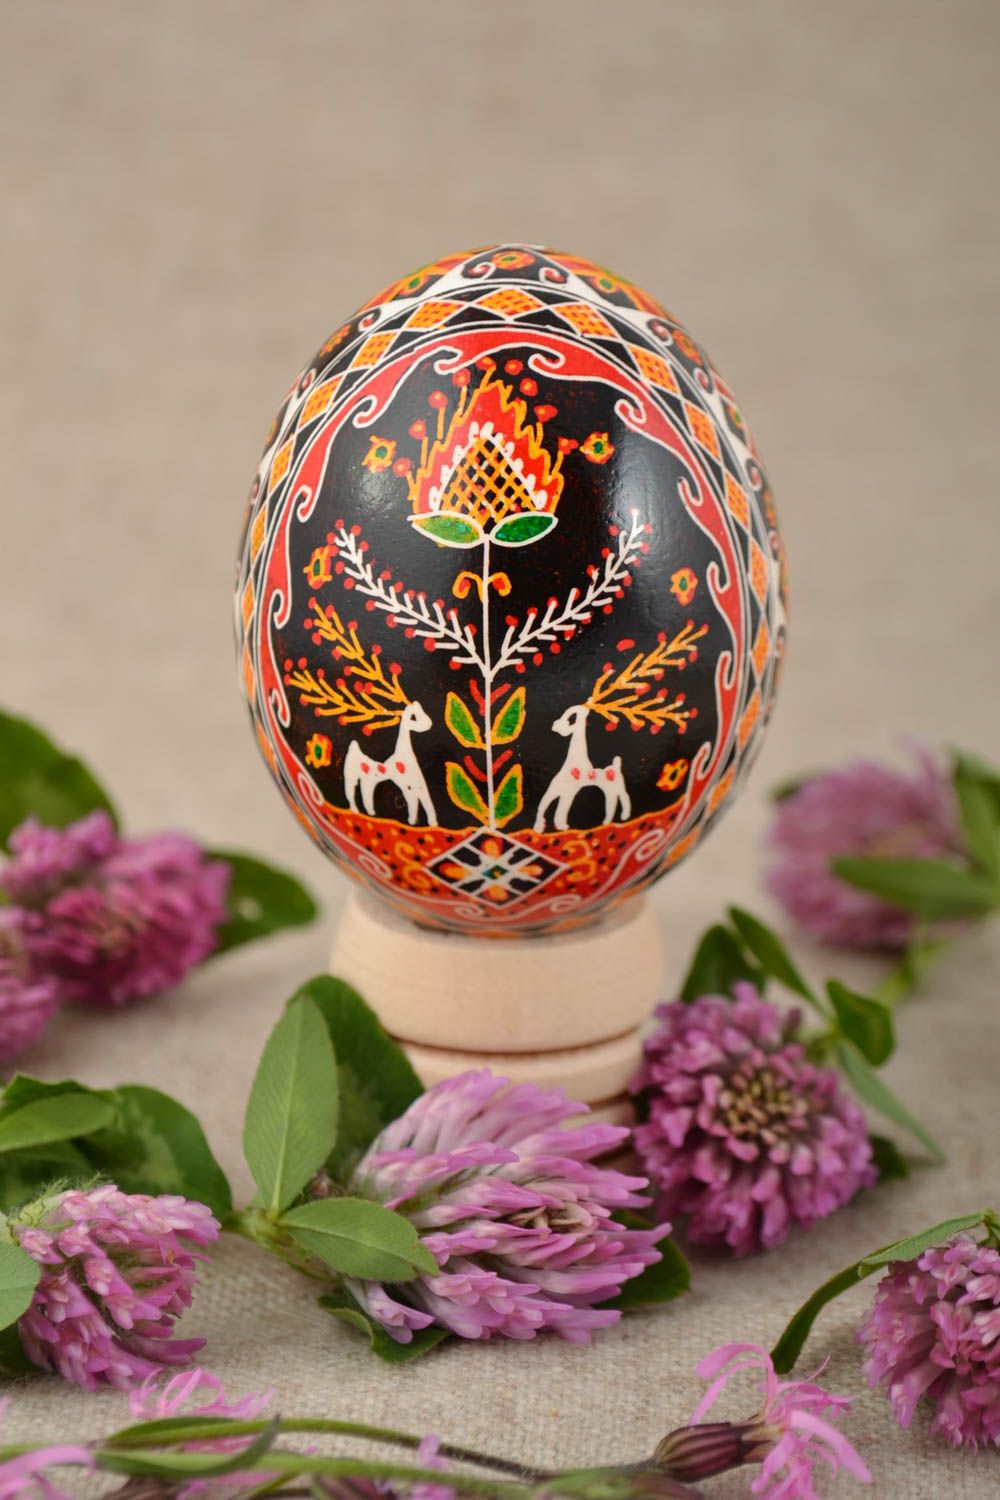 Расписное куриное яйцо со славянской символикой красивое необычное ручная работа фото 1